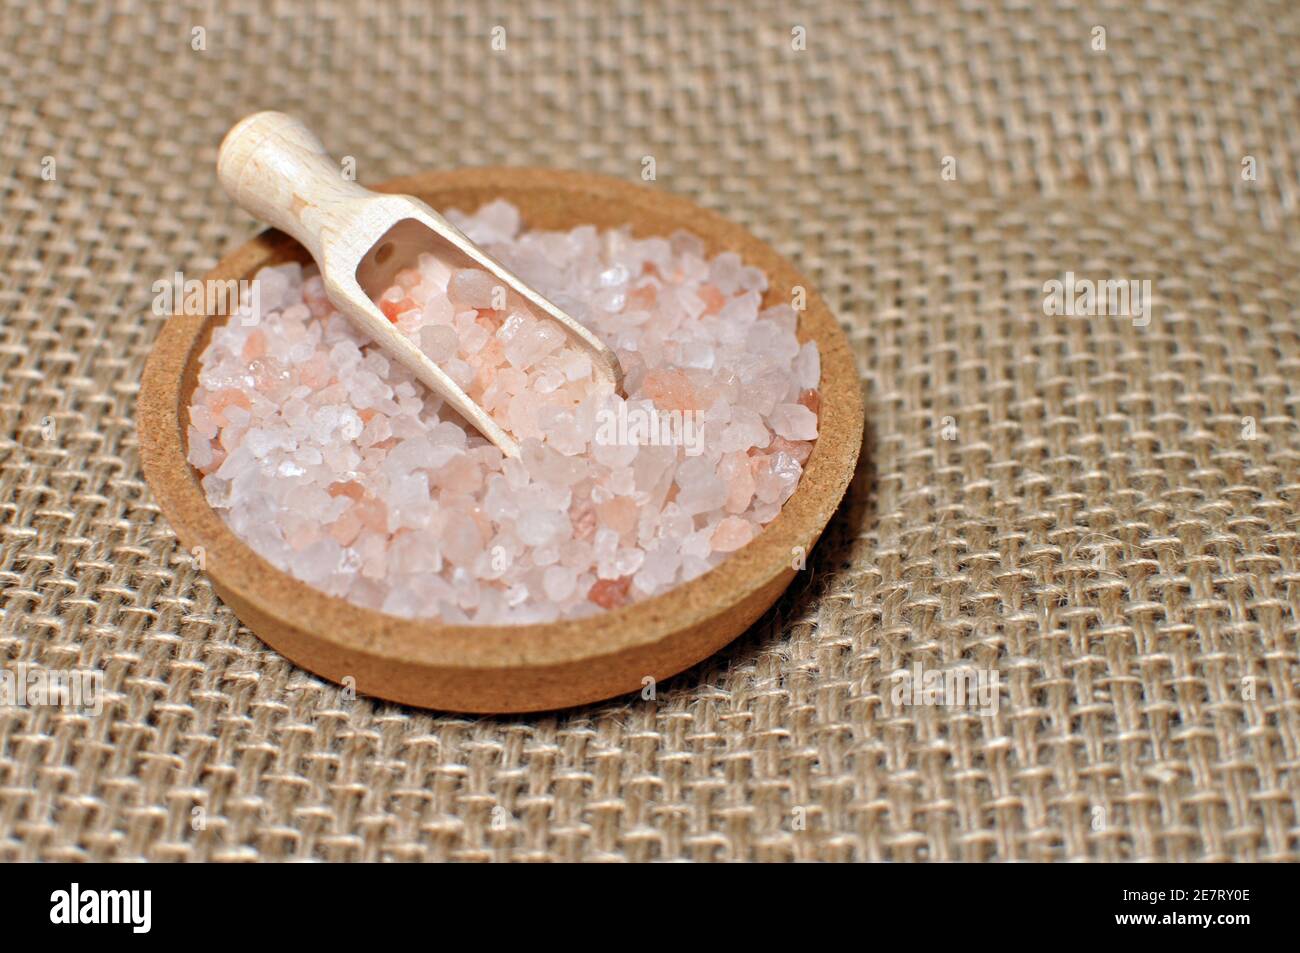 Close up of a bowl full of Himalayan pink salt Stock Photo